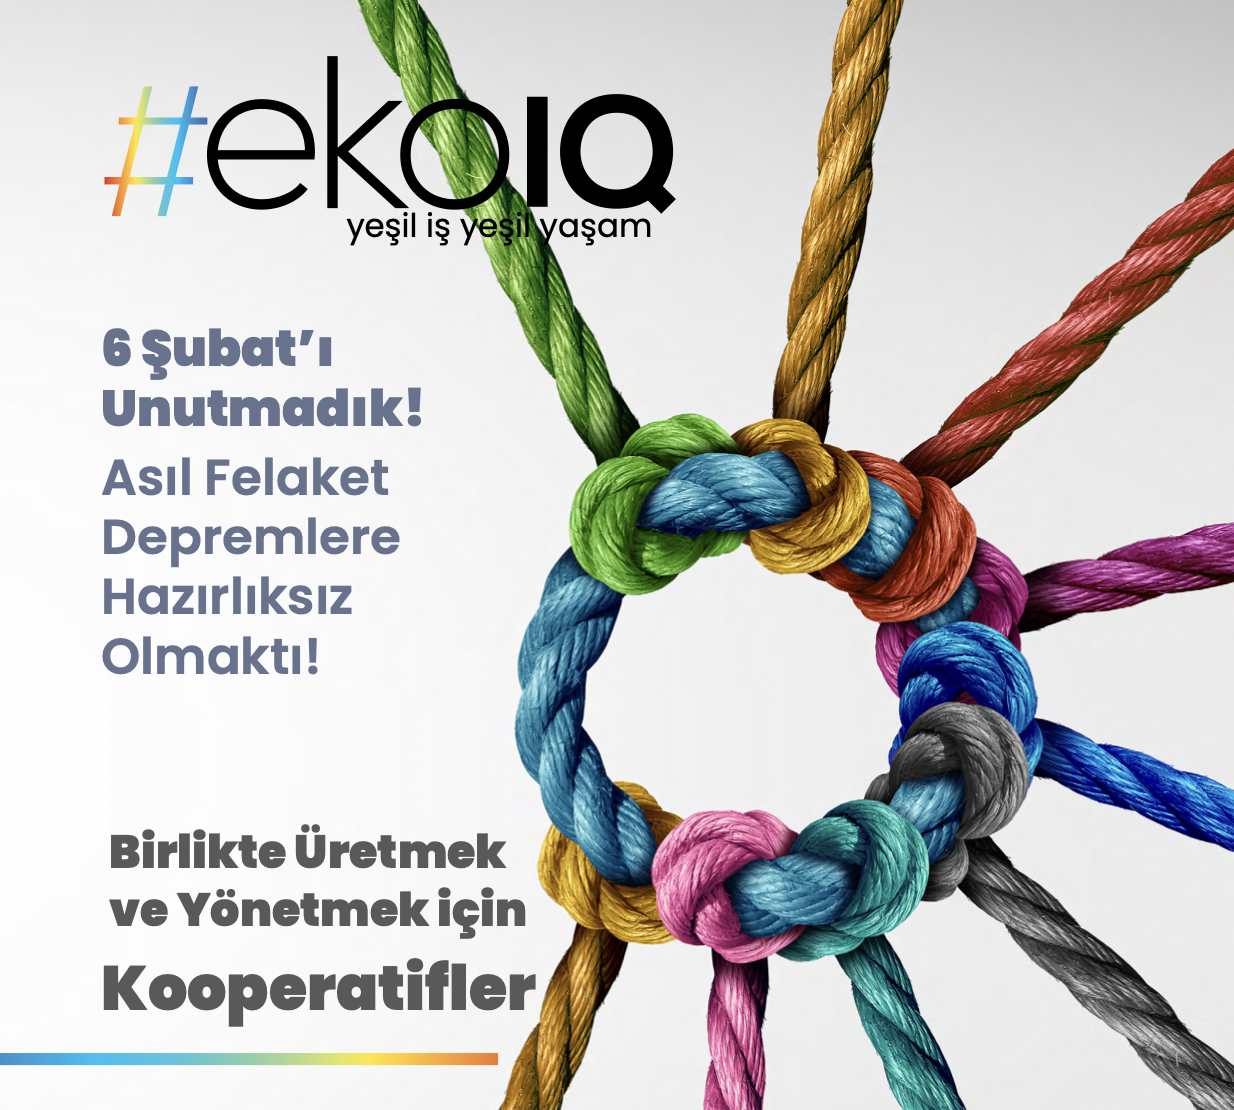 IDEMA, #ekoIQ Dergisinin Yeni Sayısında Kooperatiflerle Sürdürülebilir Bir Geleceği İnşa Etme Bağlamında Önerilen Kurumlar Arasında Yer Aldı